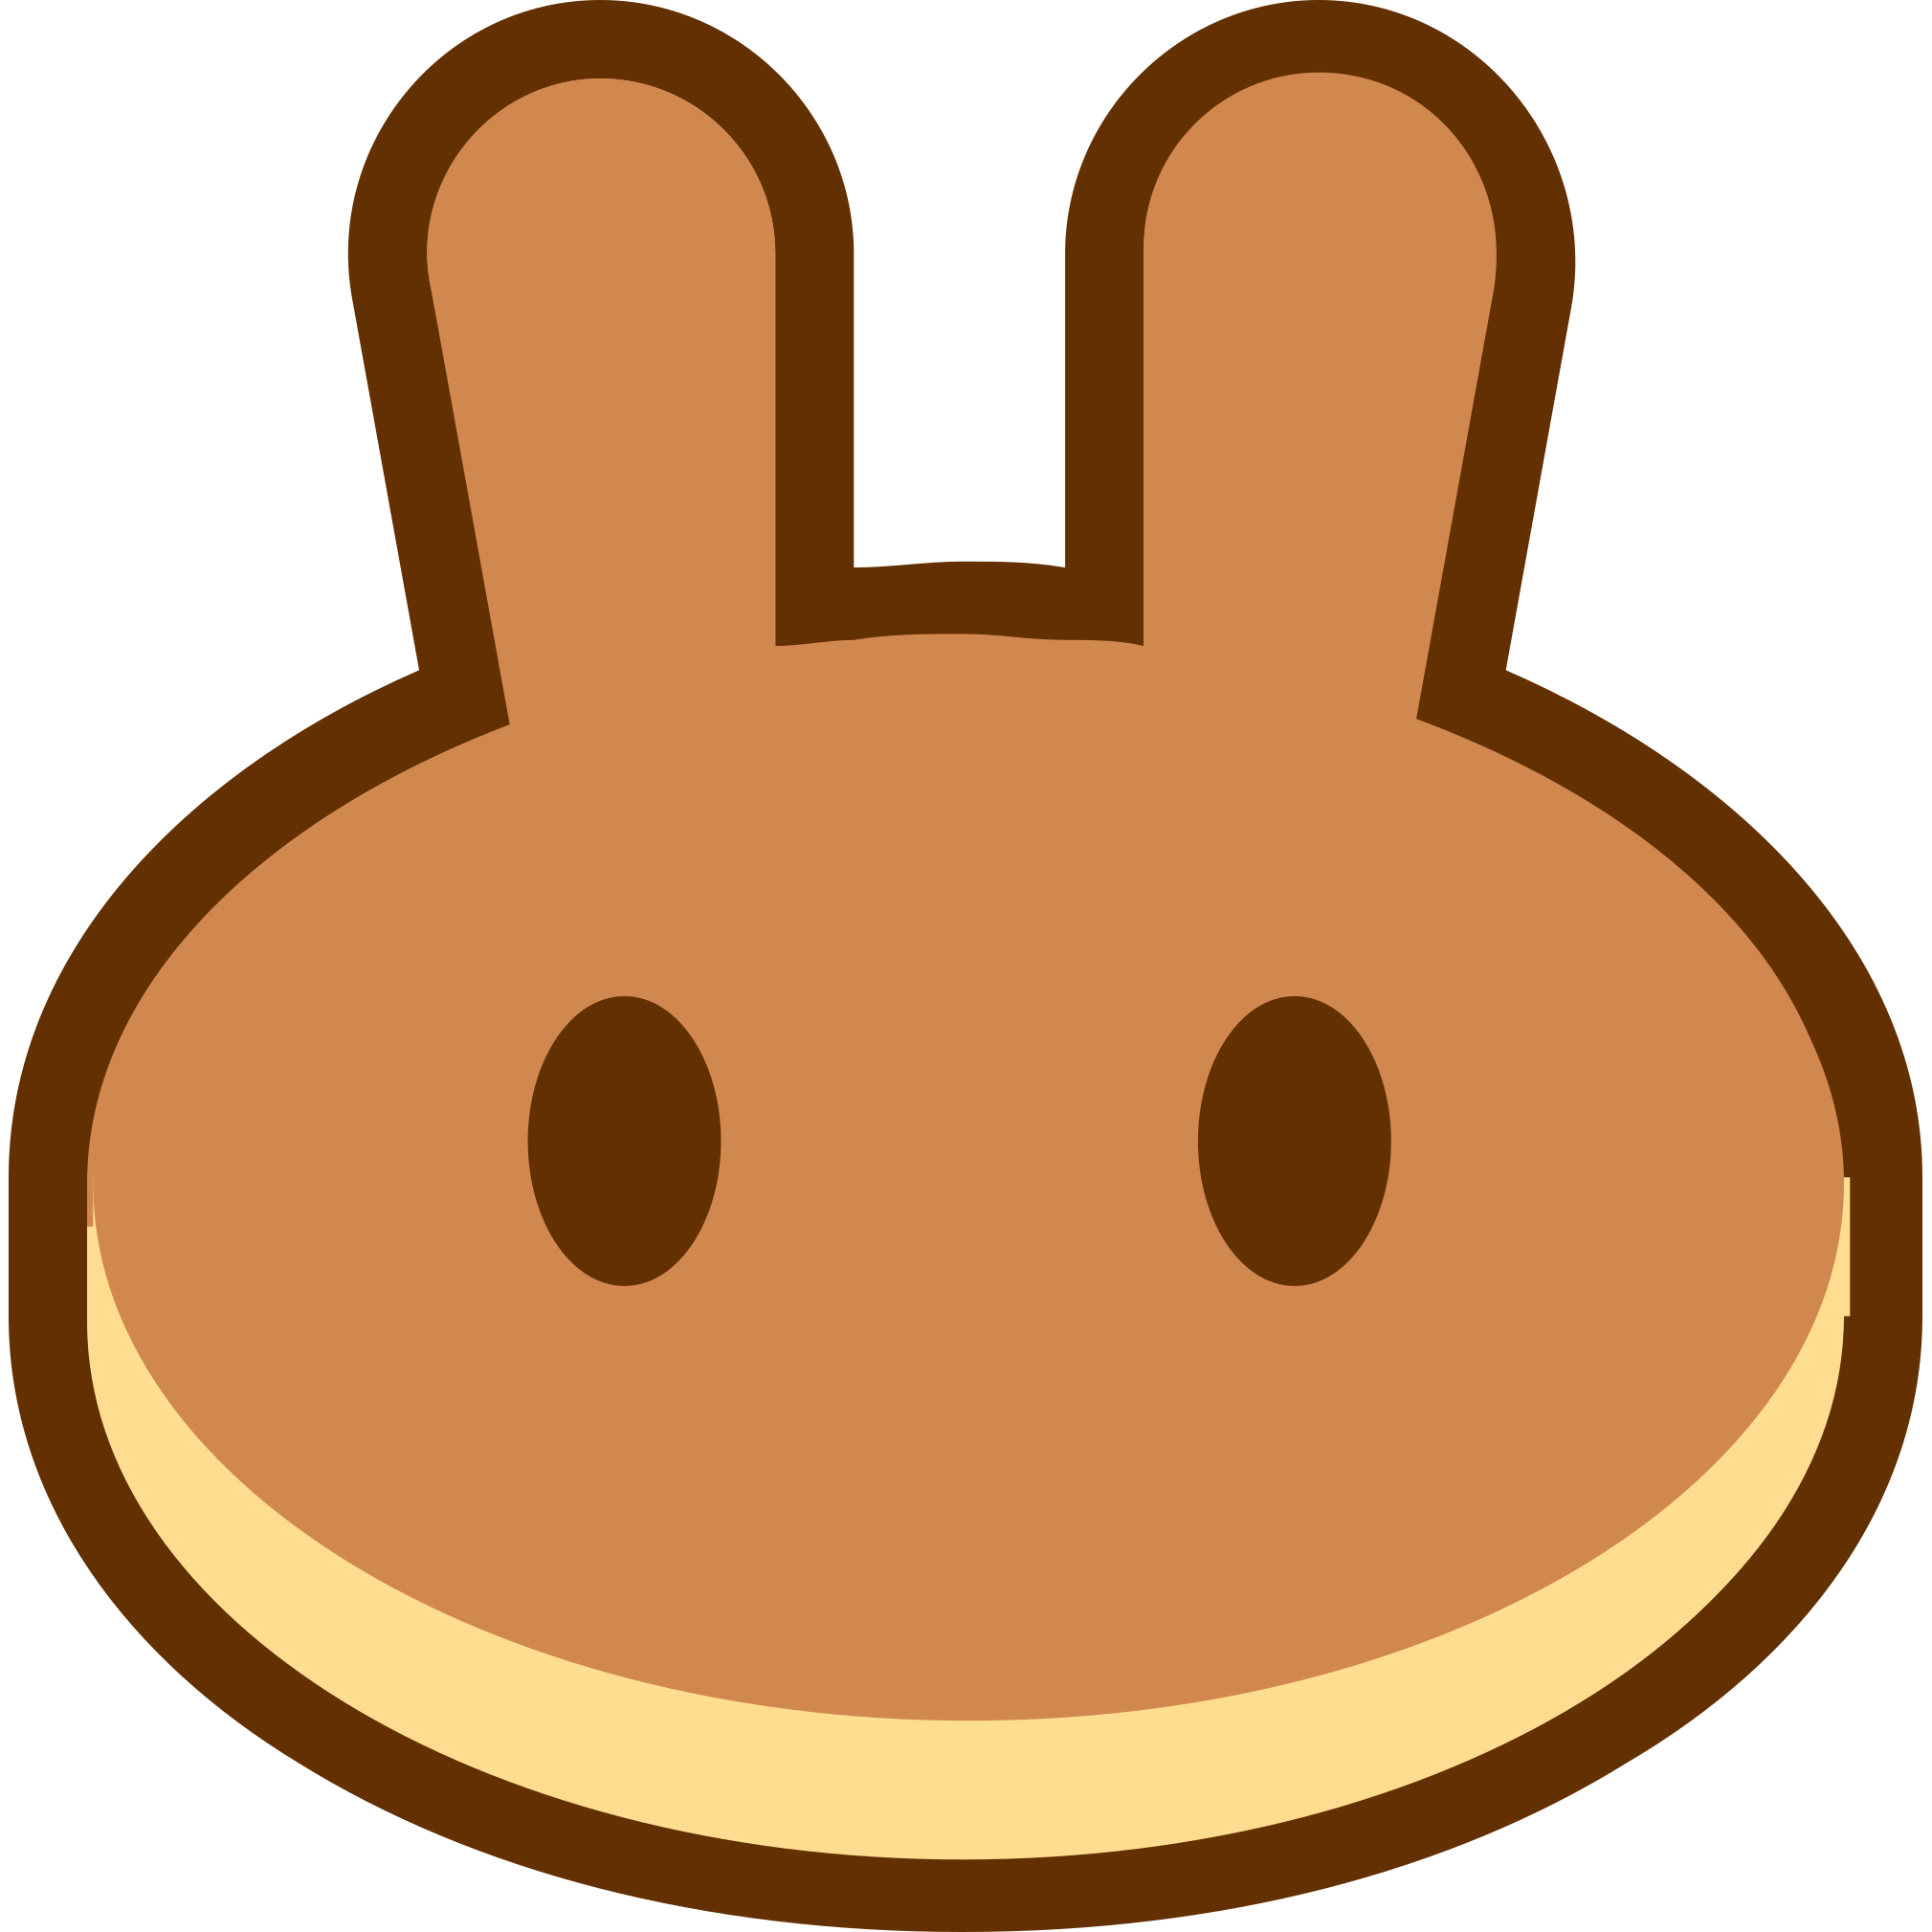 An image of the PancakeSwap logo.